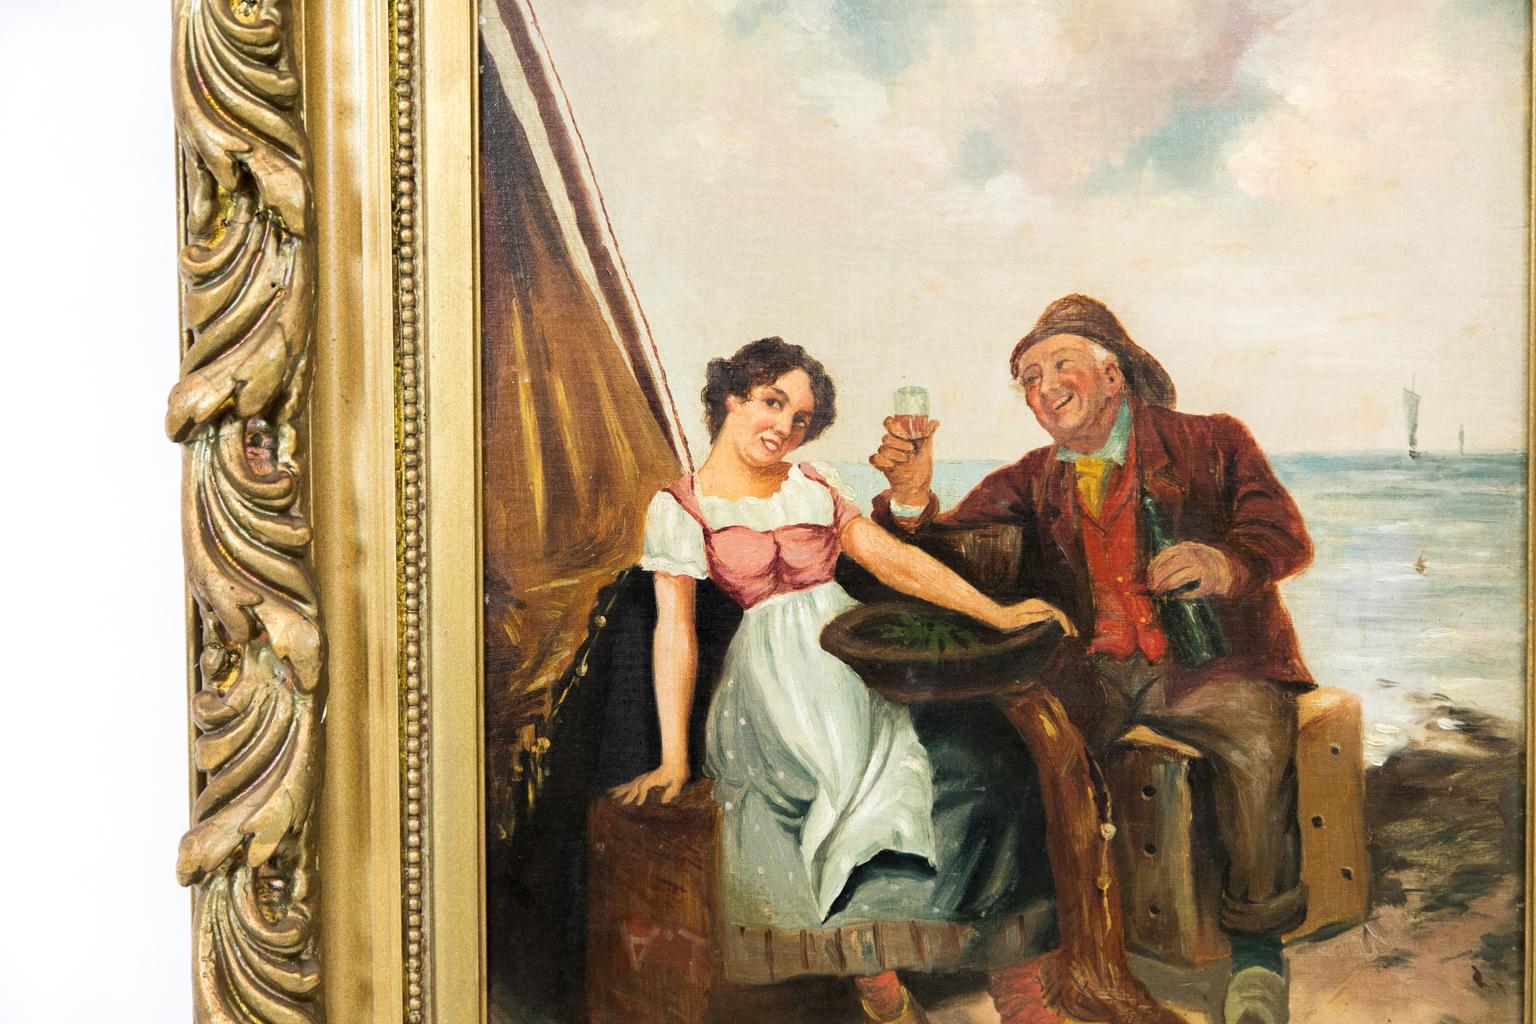 Peinture à l'huile anglaise sur carton d'artiste, représentant un marin avec une dame.
Le cadre présente quelques fissures de rétraction,